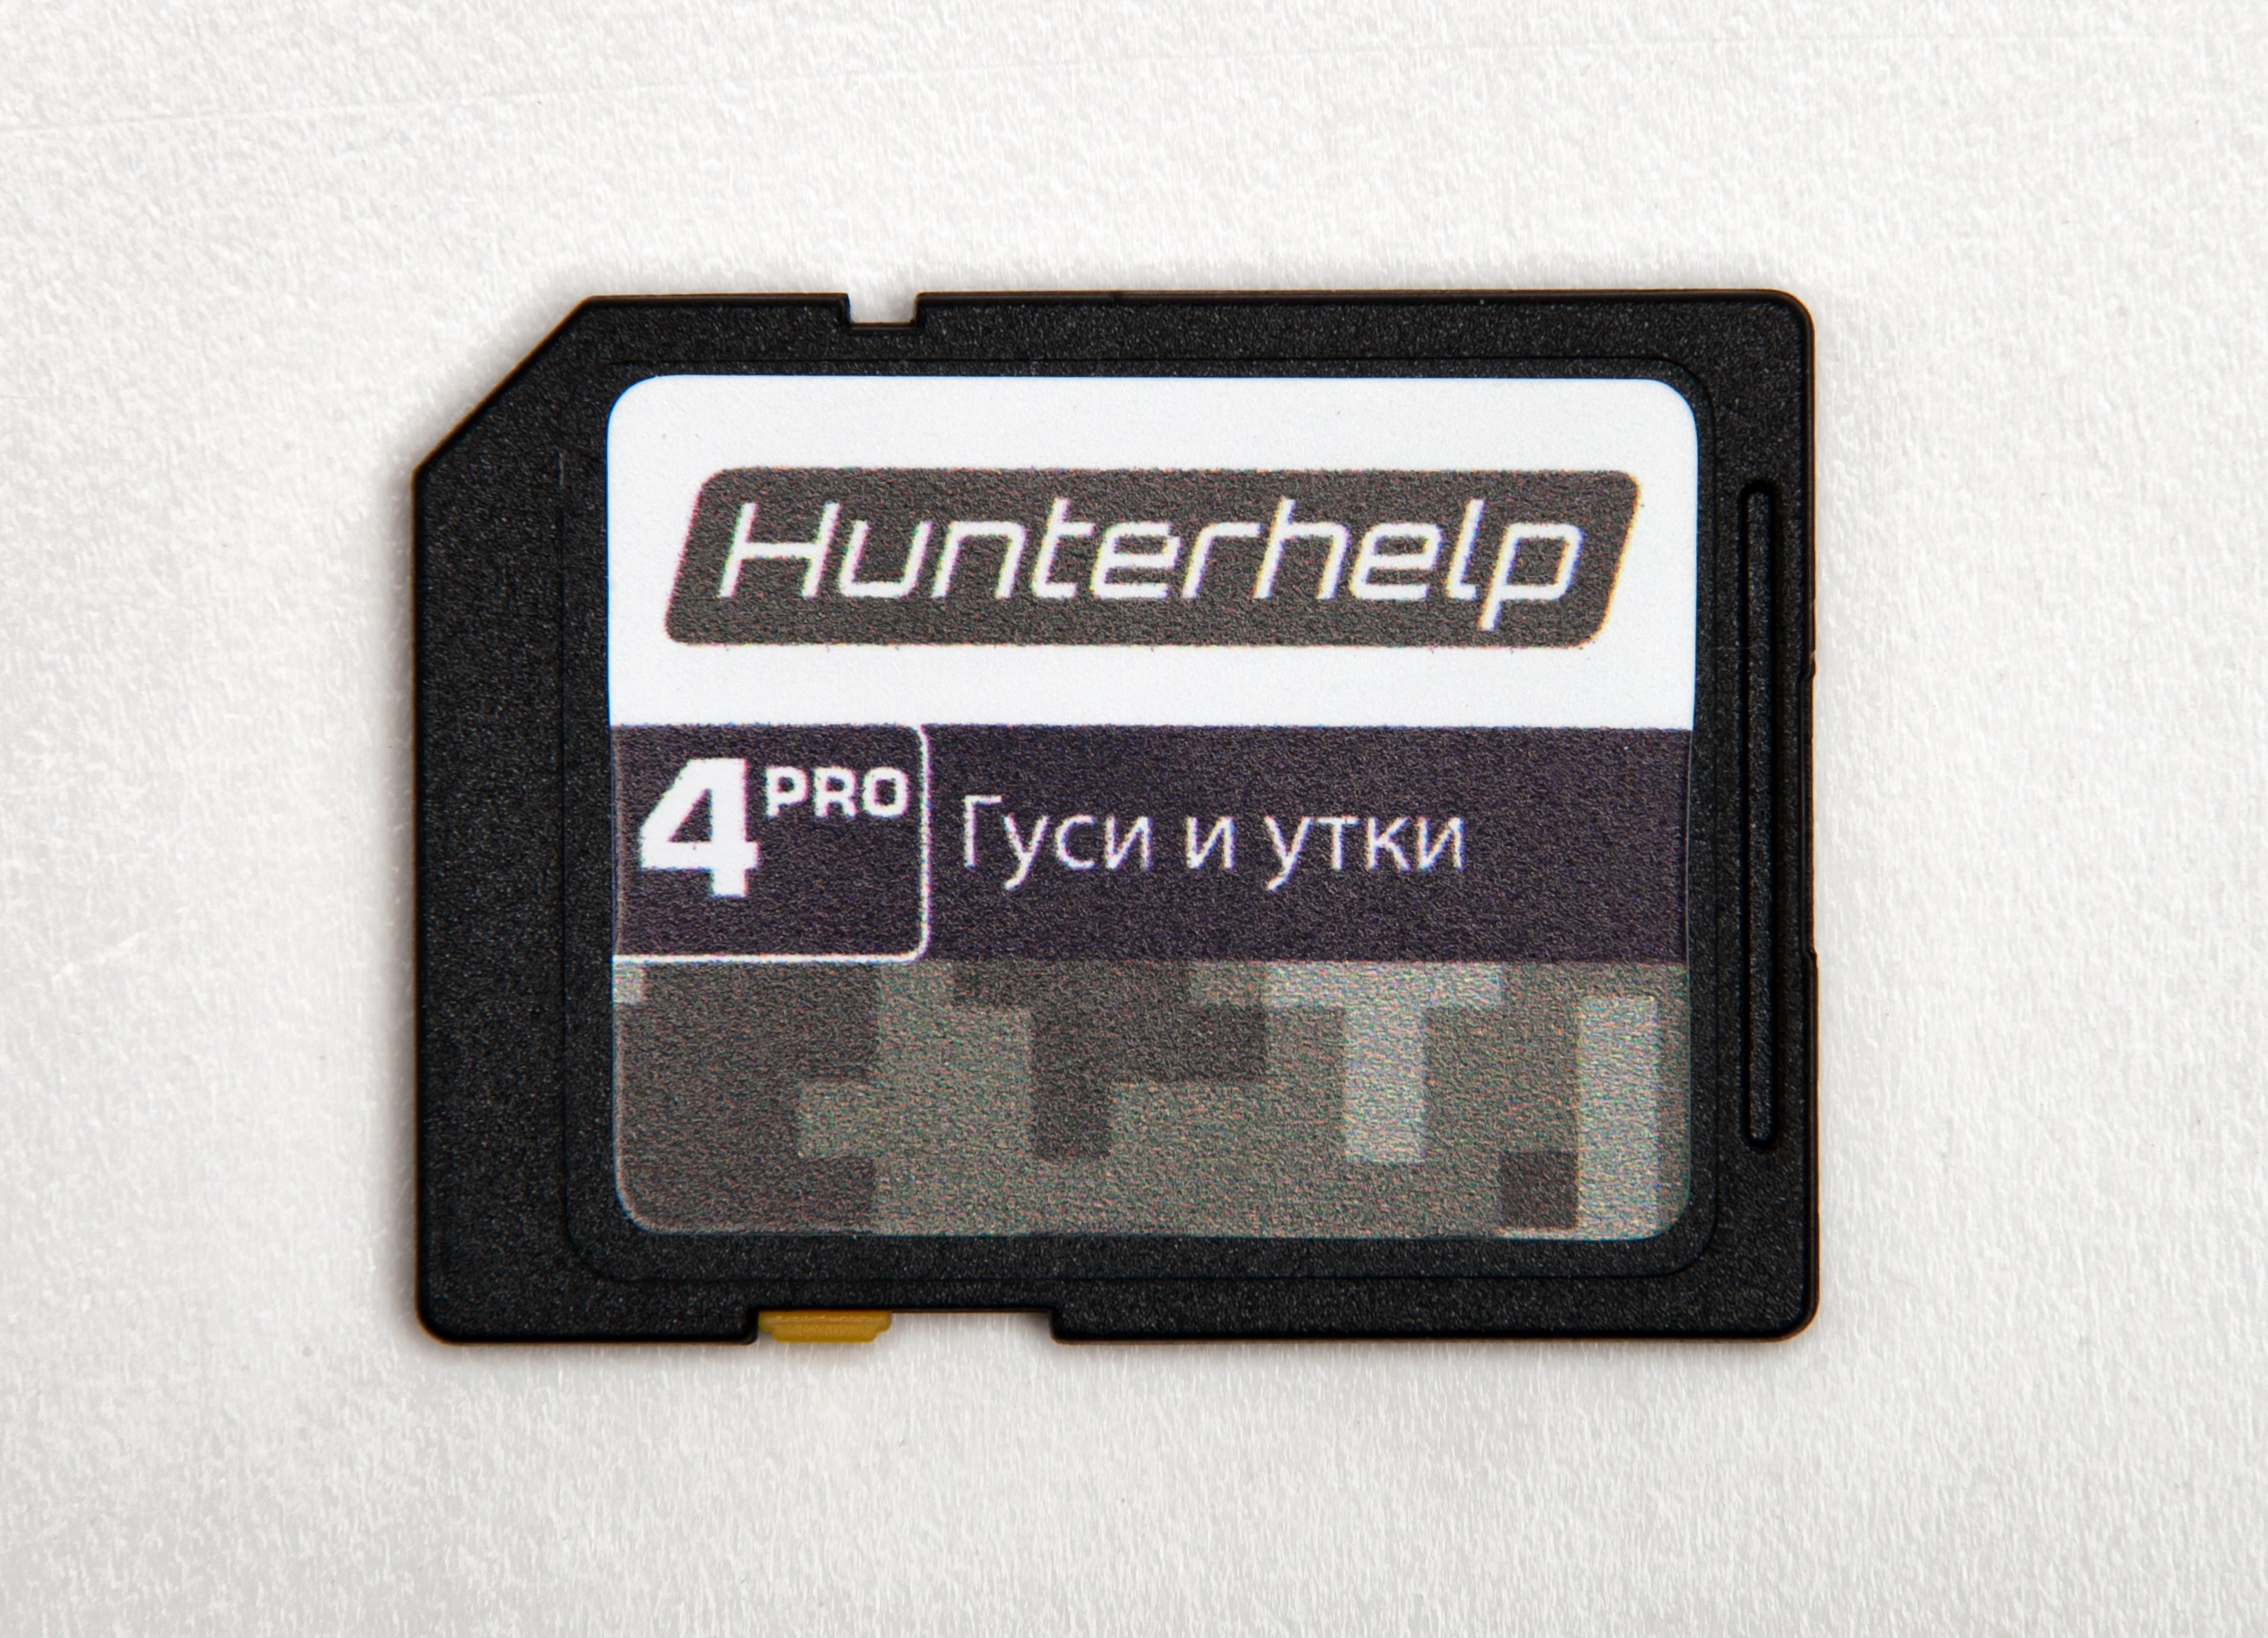 Карта памяти microSD Hunterhelp №4 Фонотека «Гуси и утки»